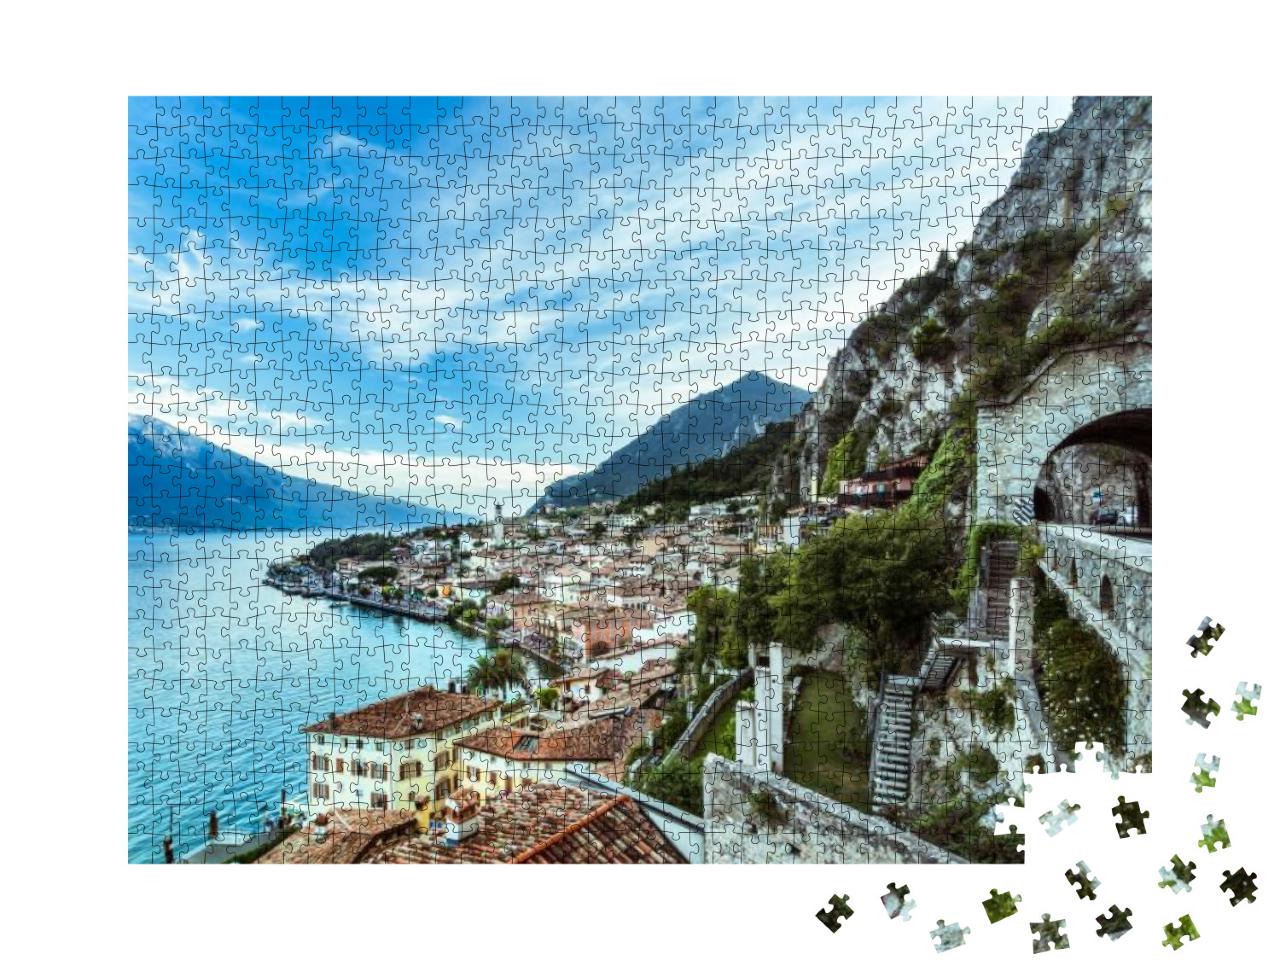 Wonderful Panorama of Limone Sul Garda. Lake Garda Italy... Jigsaw Puzzle with 1000 pieces